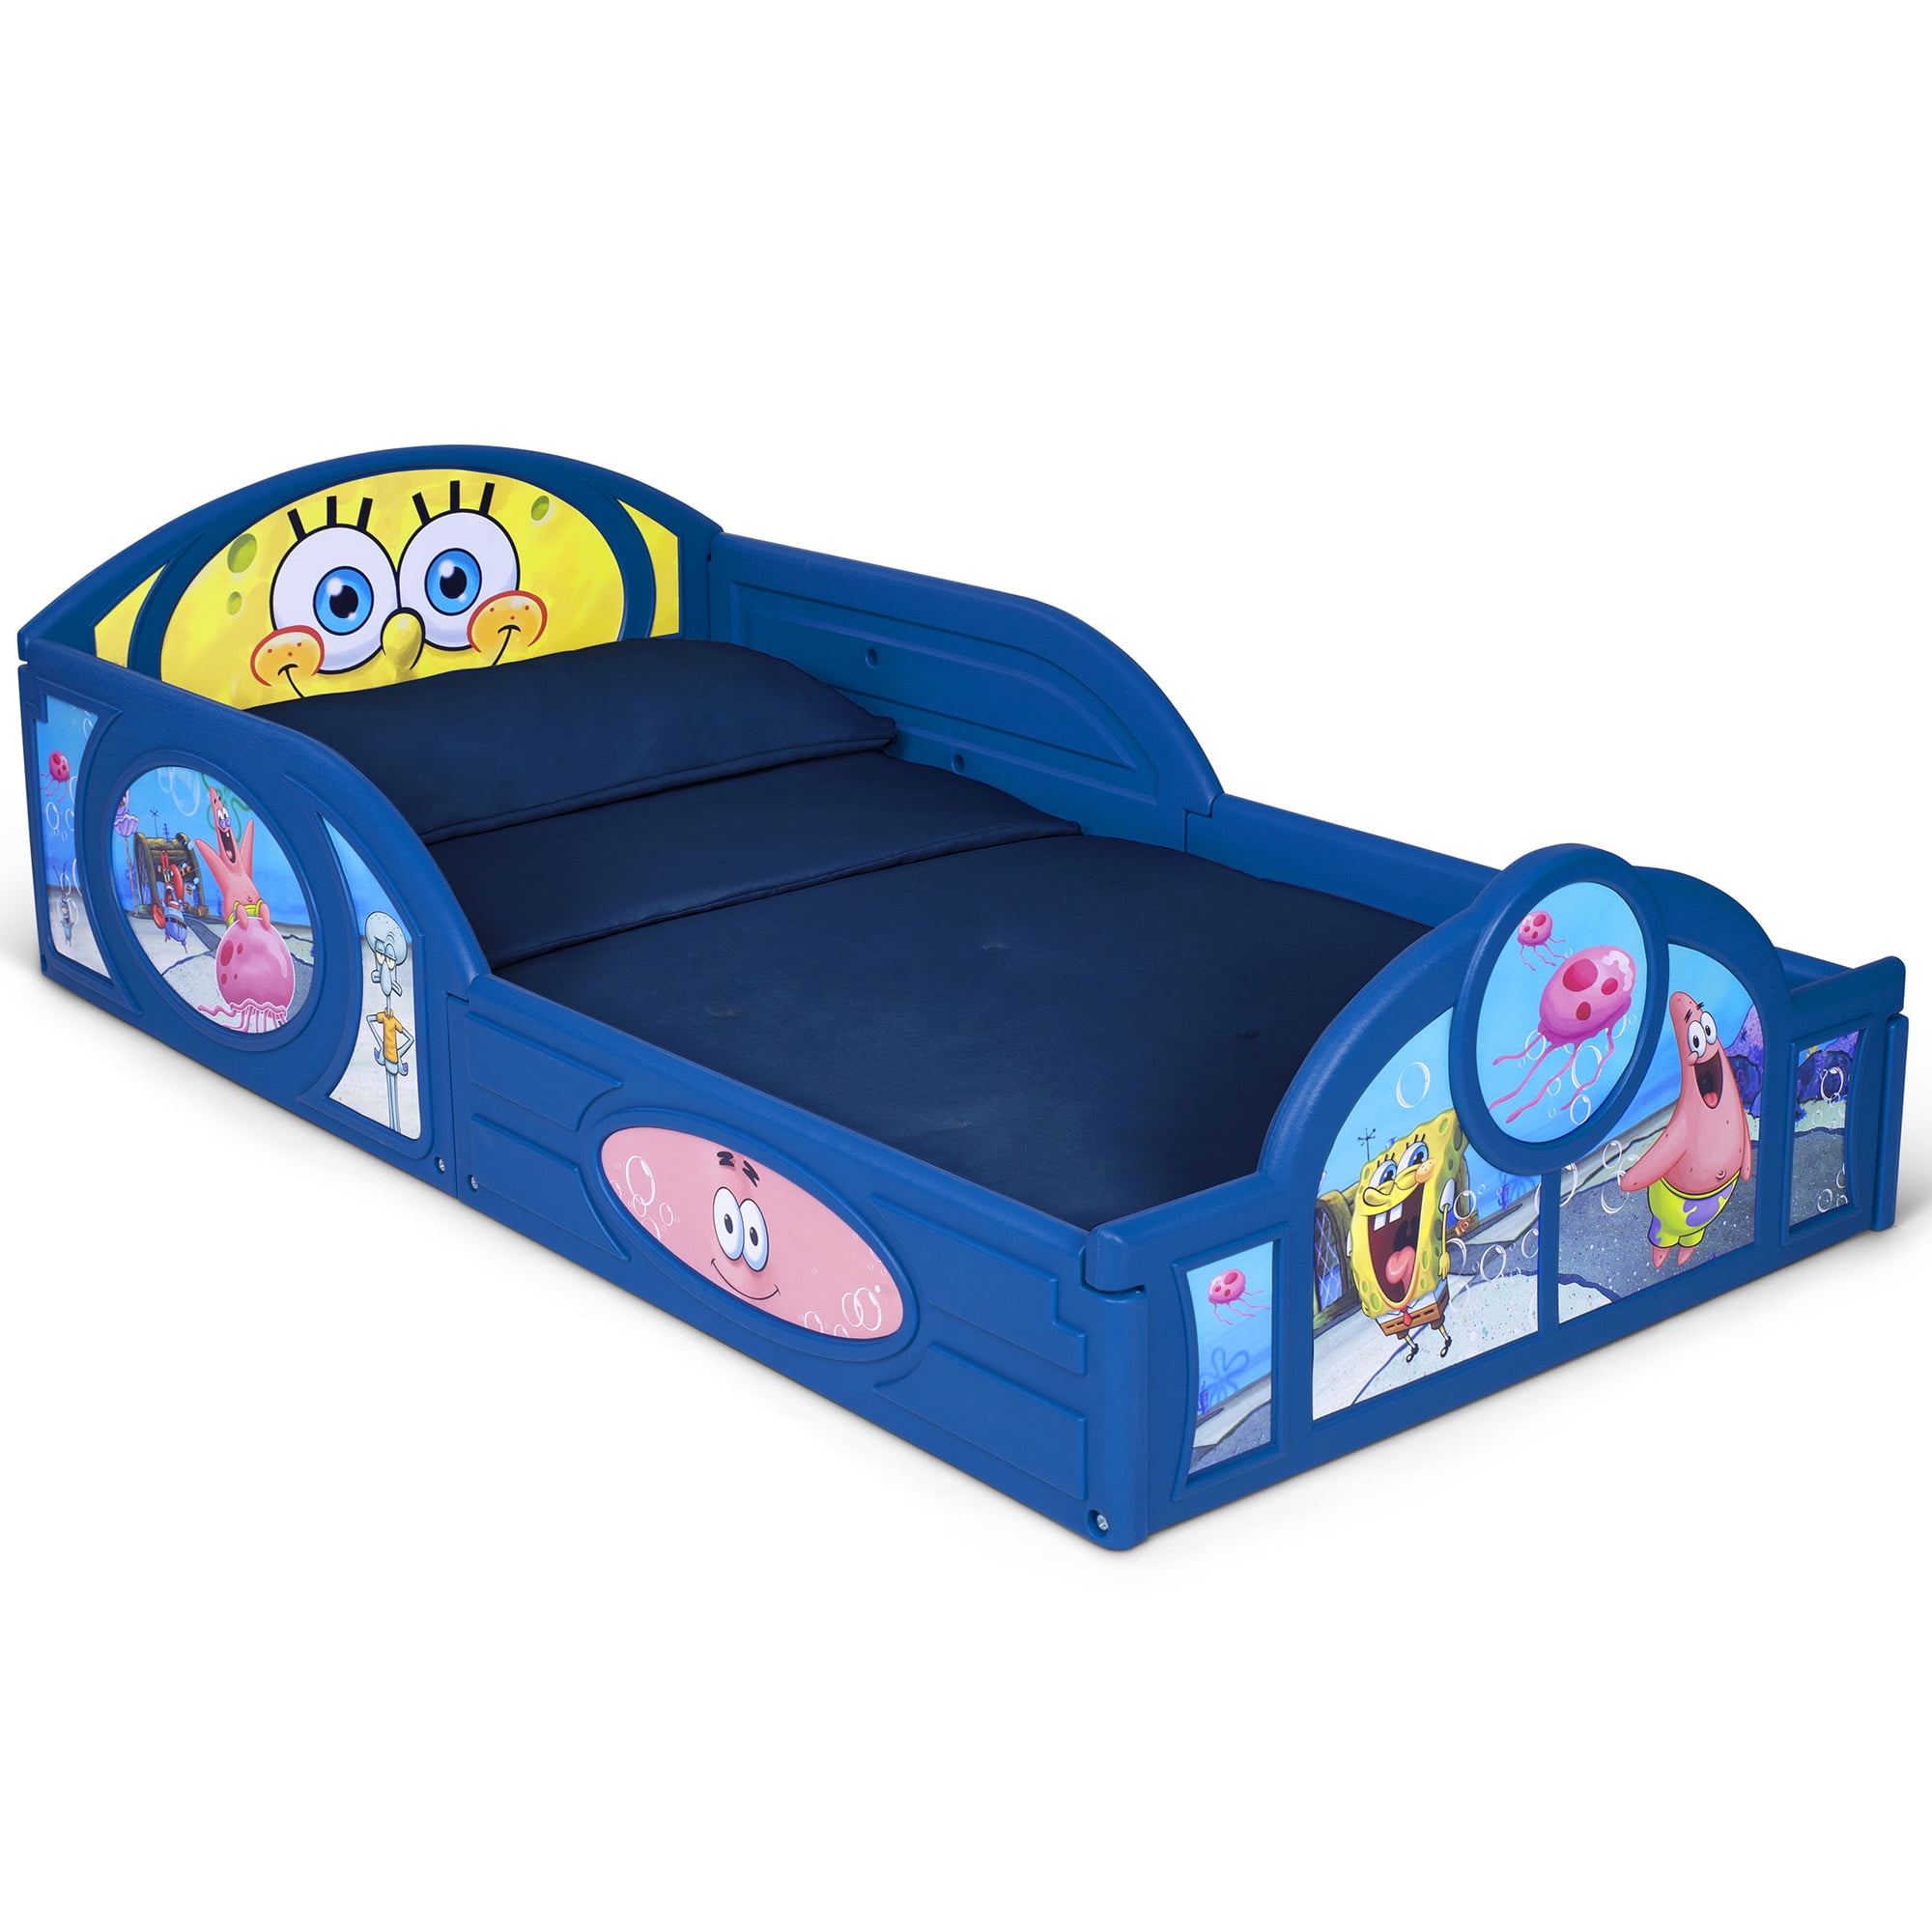 Toddler Bed Kid Frame Child Bedroom Furniture Boy Girl Princess Disney Safety 